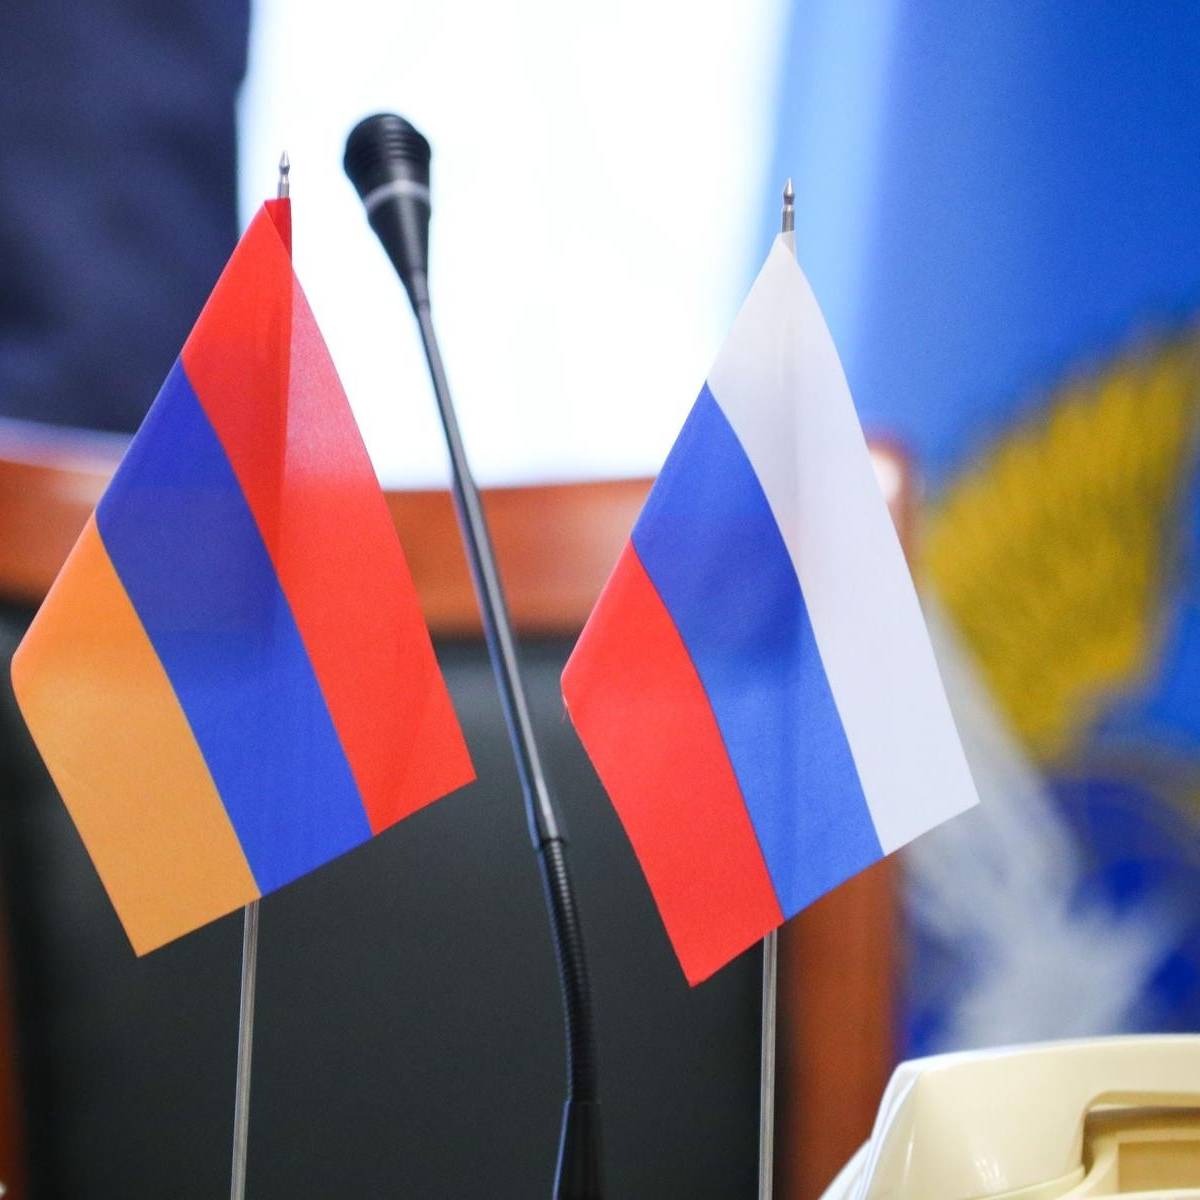 Русский язык в образовательной сфере Армении: проблемы и перспективы